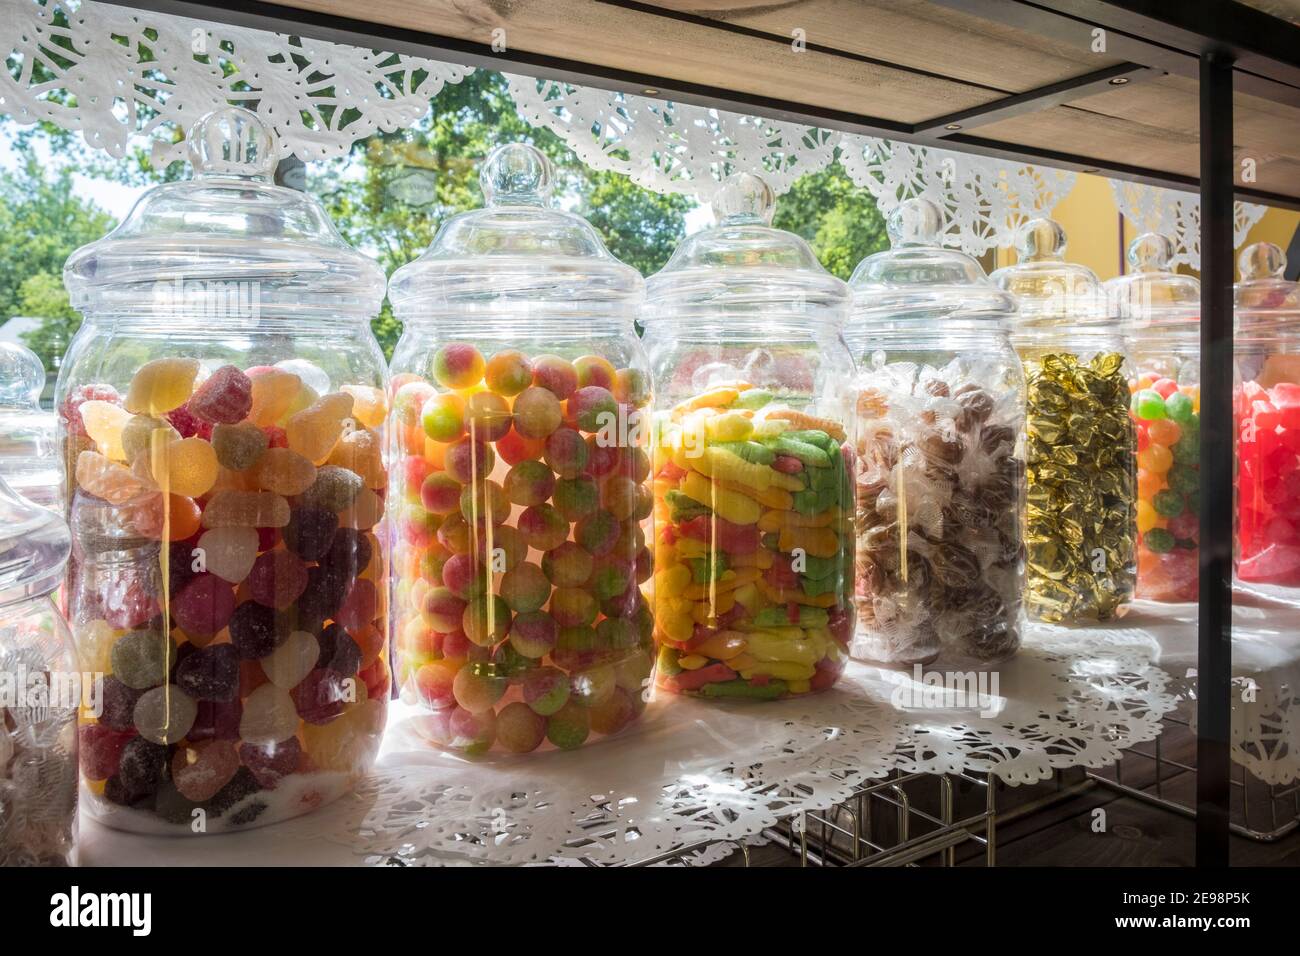 Vasi di dolci in una vetrina Foto Stock